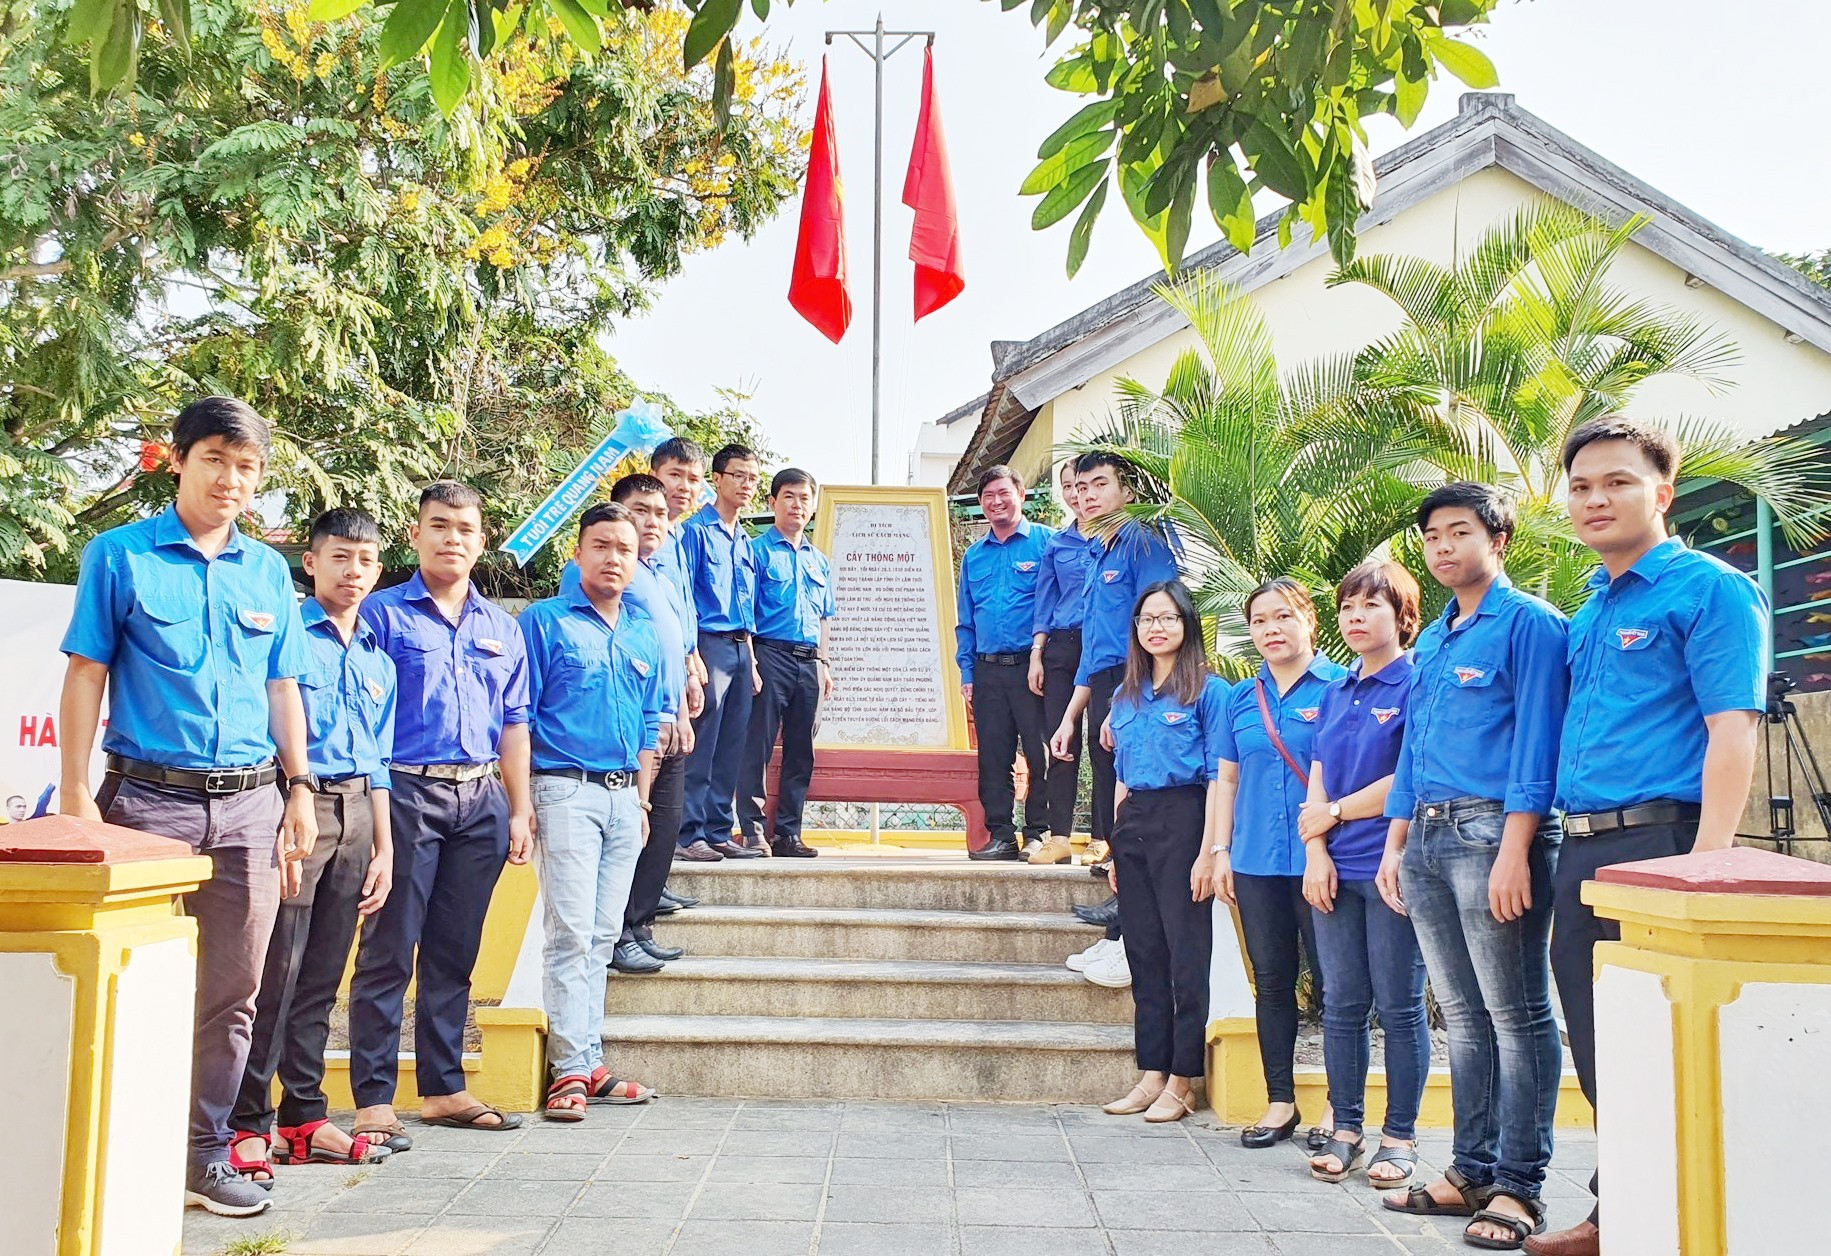 Tuổi trẻ Quảng Nam thăm Di tích Cây Thông Một - địa điểm thành lập Đảng bộ tỉnh Quảng Nam vào tháng 3/1930. Ảnh: Đ.N